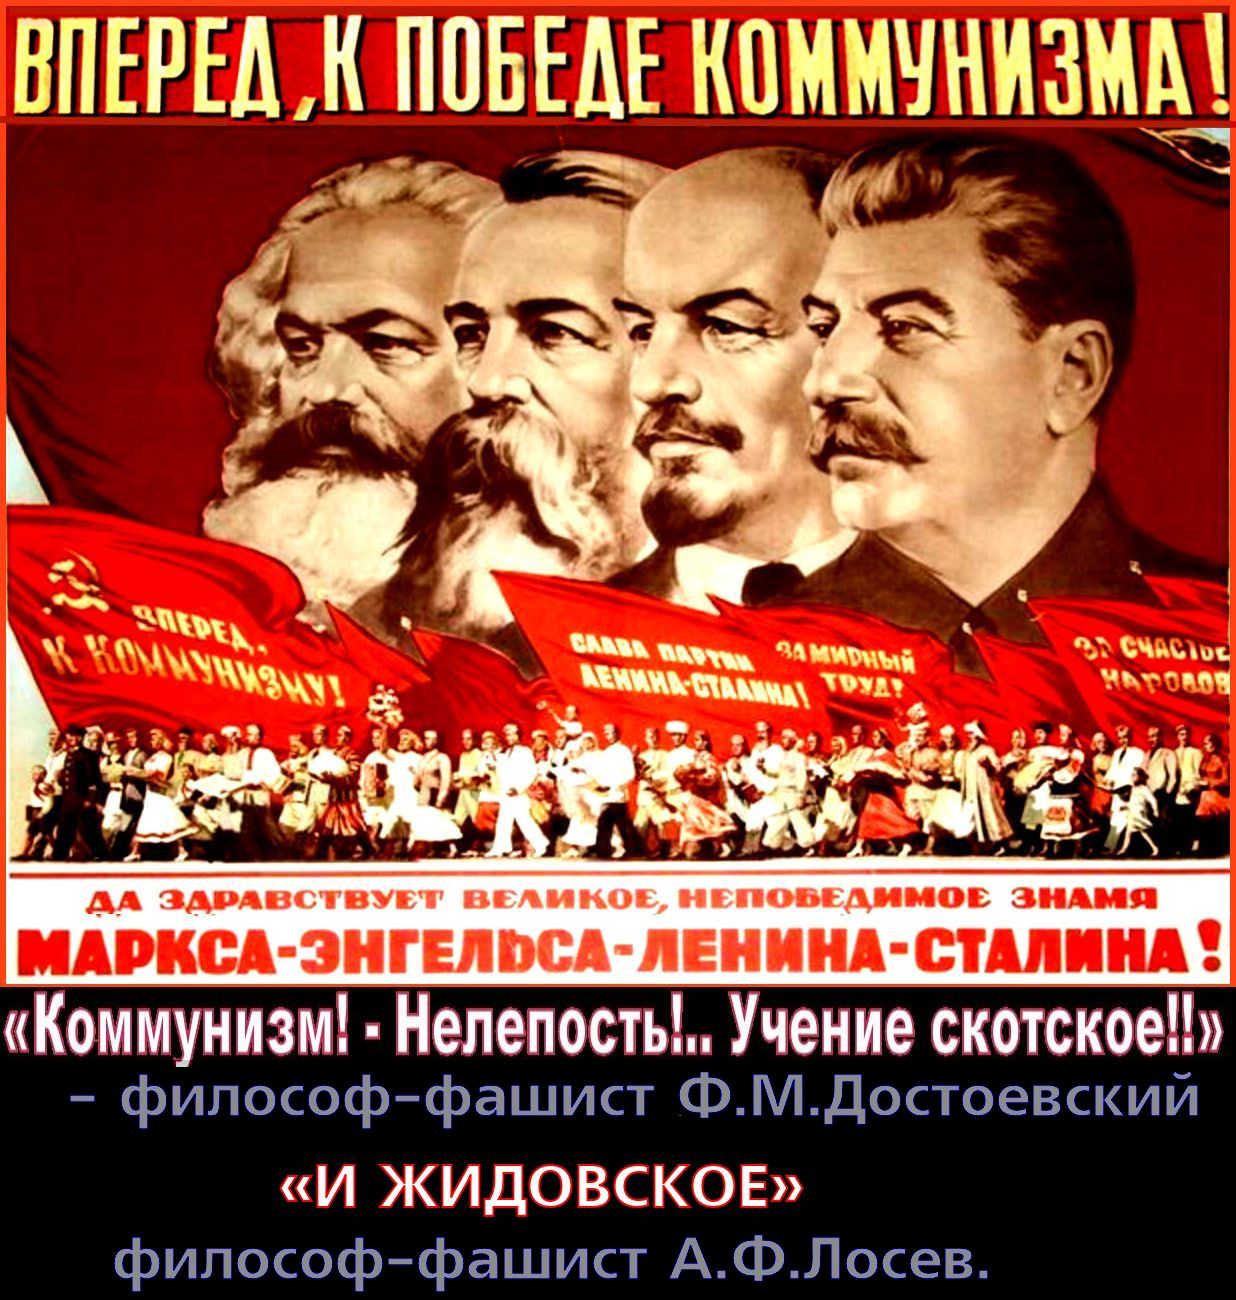 МВН: «Почему неправильно коммунизм приравнивать к фашизму». — Коммунизм надо приравнивать не к фашизму, а к ЖИДИЗМУ. Коммунизм в СССР — это ЖИДобольшевИЗМ, вышедший из еврейской партии «Бунд», следовательно это разновидность жидизма, куда более страшного, чем нацизм. Коммунизм (жидизм) унёс более 110 млн. русских жизней. «ЖИДИЗМ» — религия ненависти и людоедства.